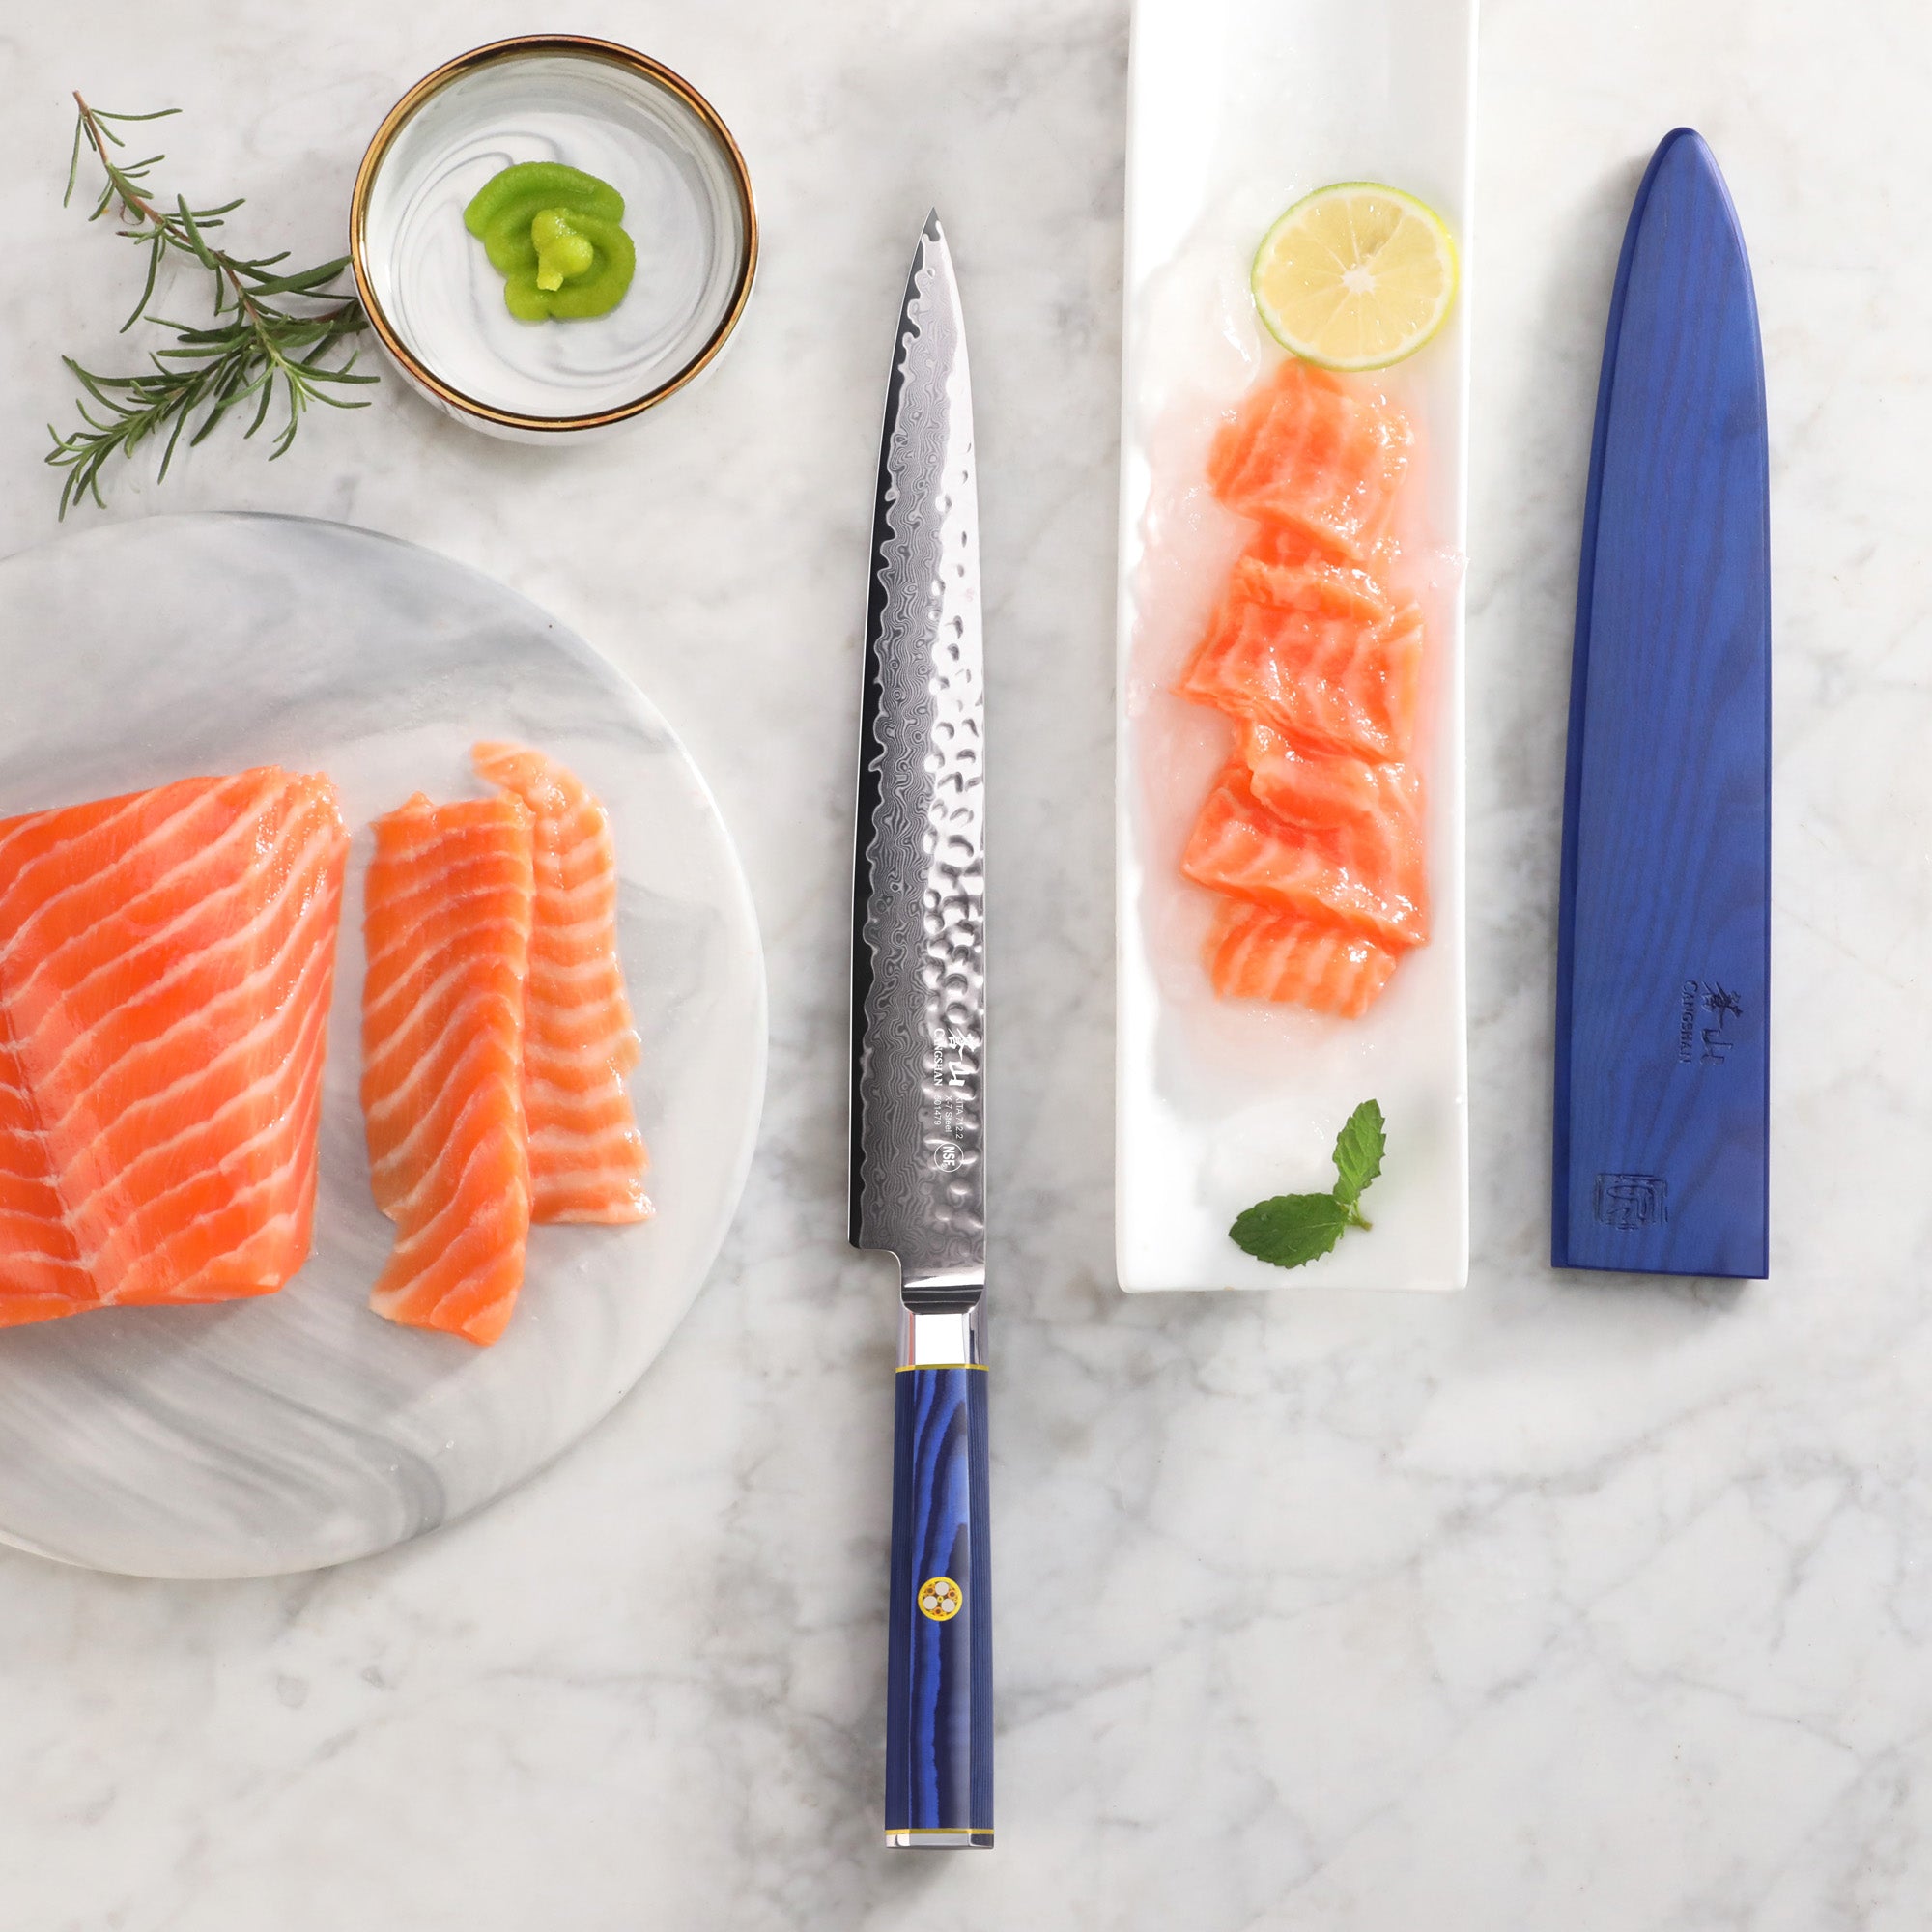 Cangshan Kita 10" Sashimi Knife